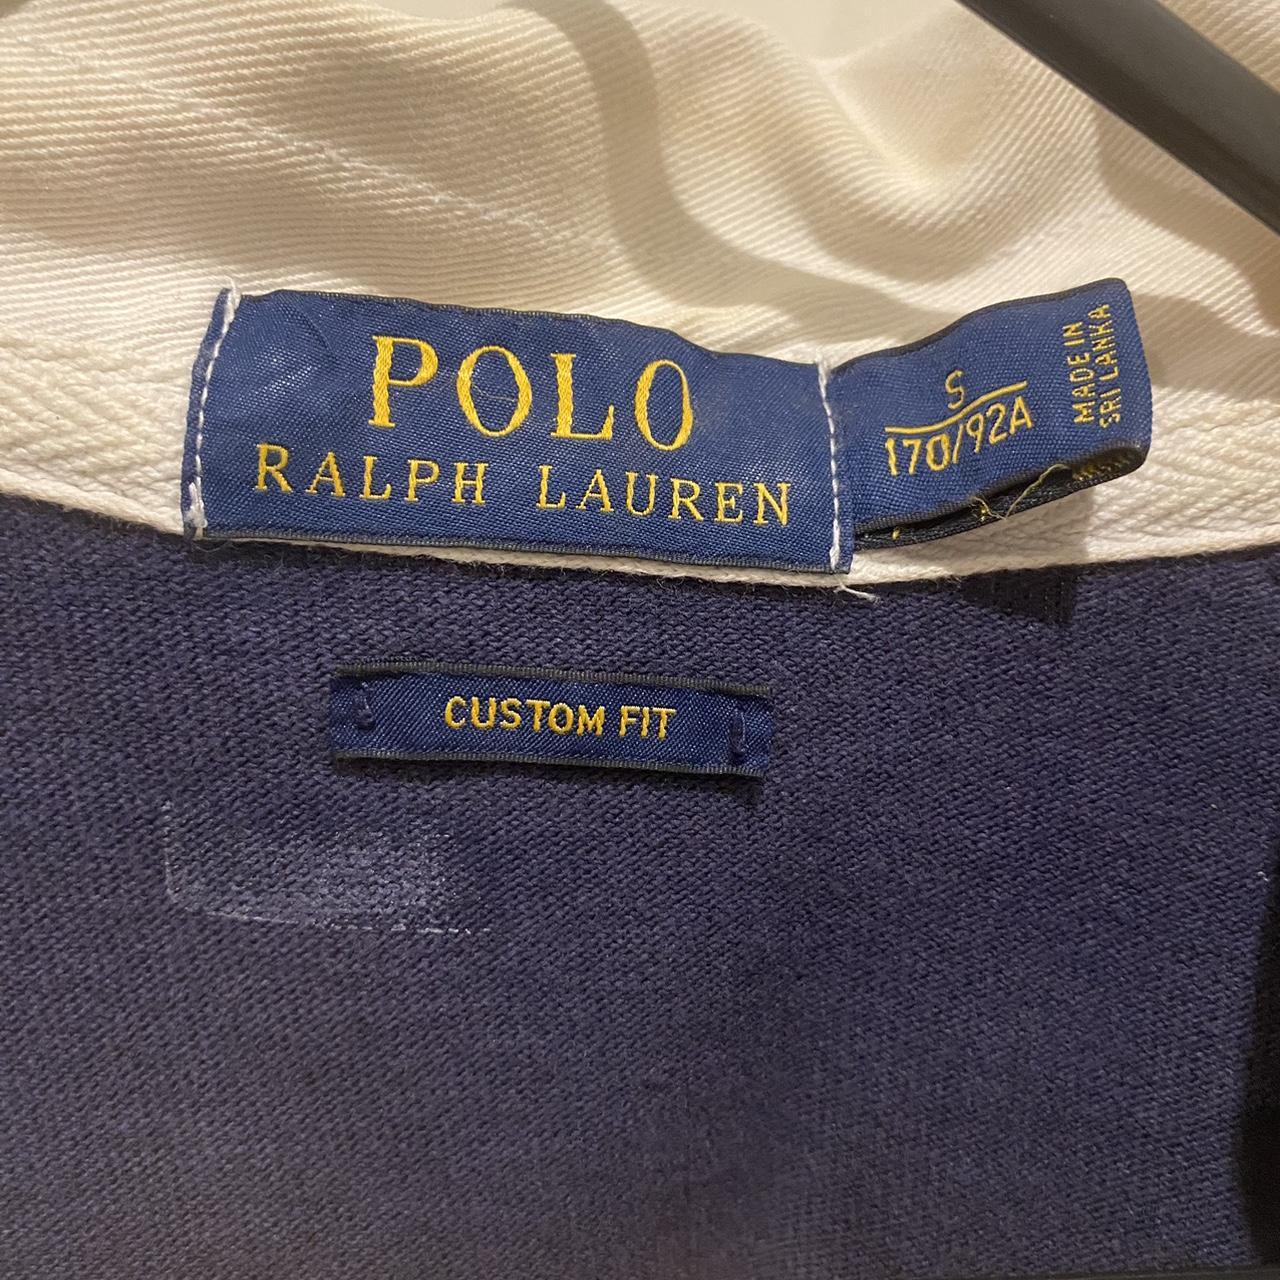 Polo Ralph Lauren rugby jumper - Depop